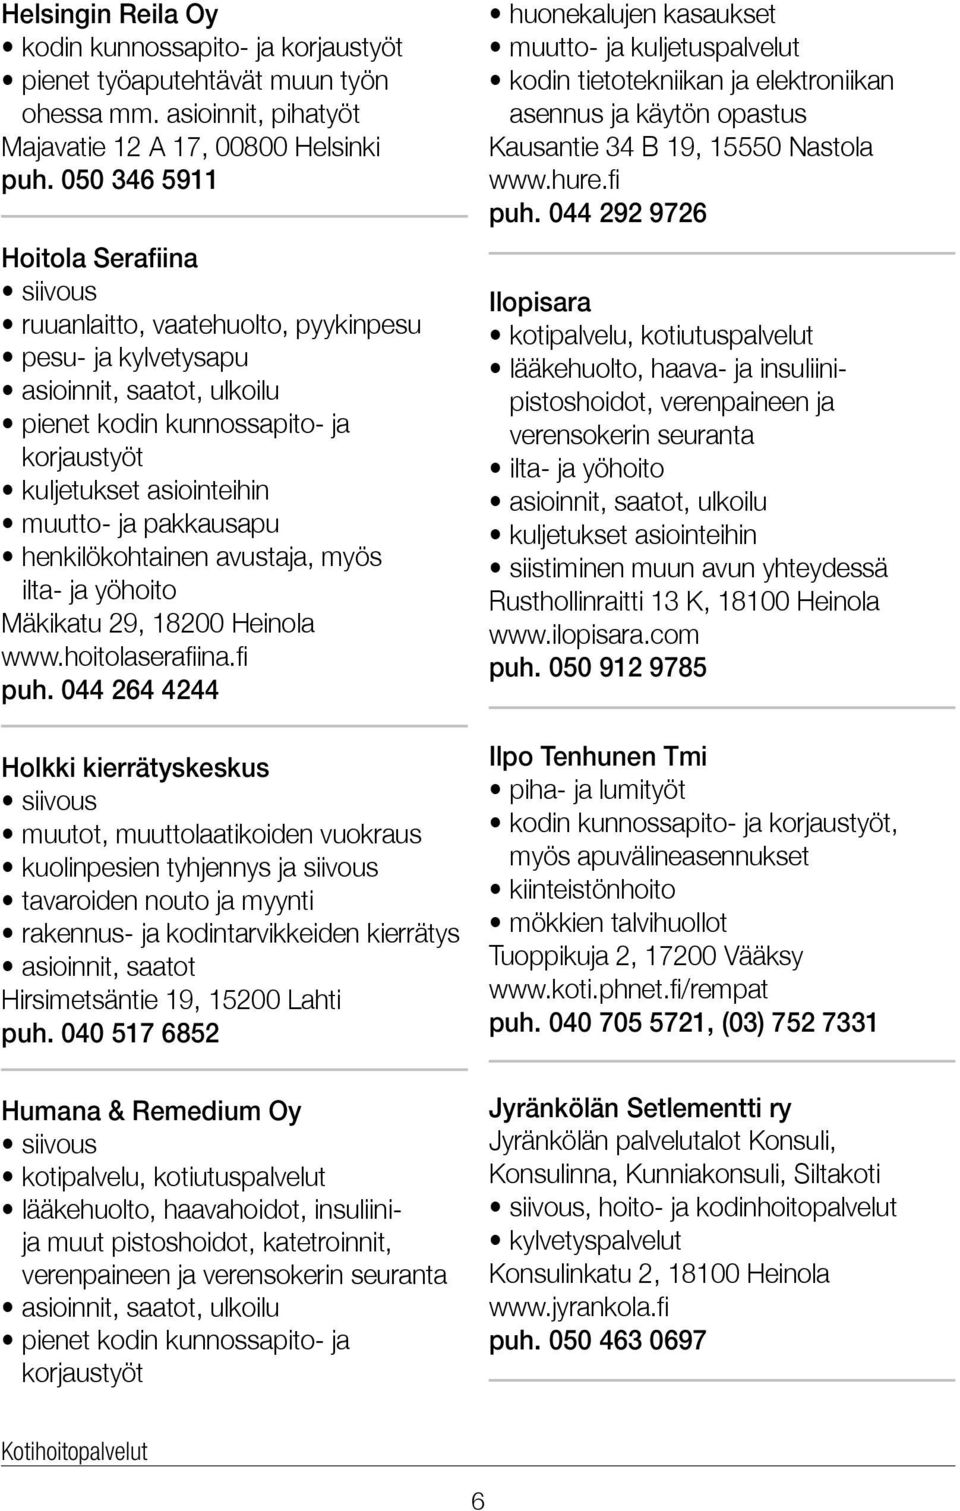 ja pakkausapu henkilökohtainen avustaja, myös ilta- ja yöhoito Mäkikatu 29, 18200 Heinola www.hoitolaserafiina.fi puh.